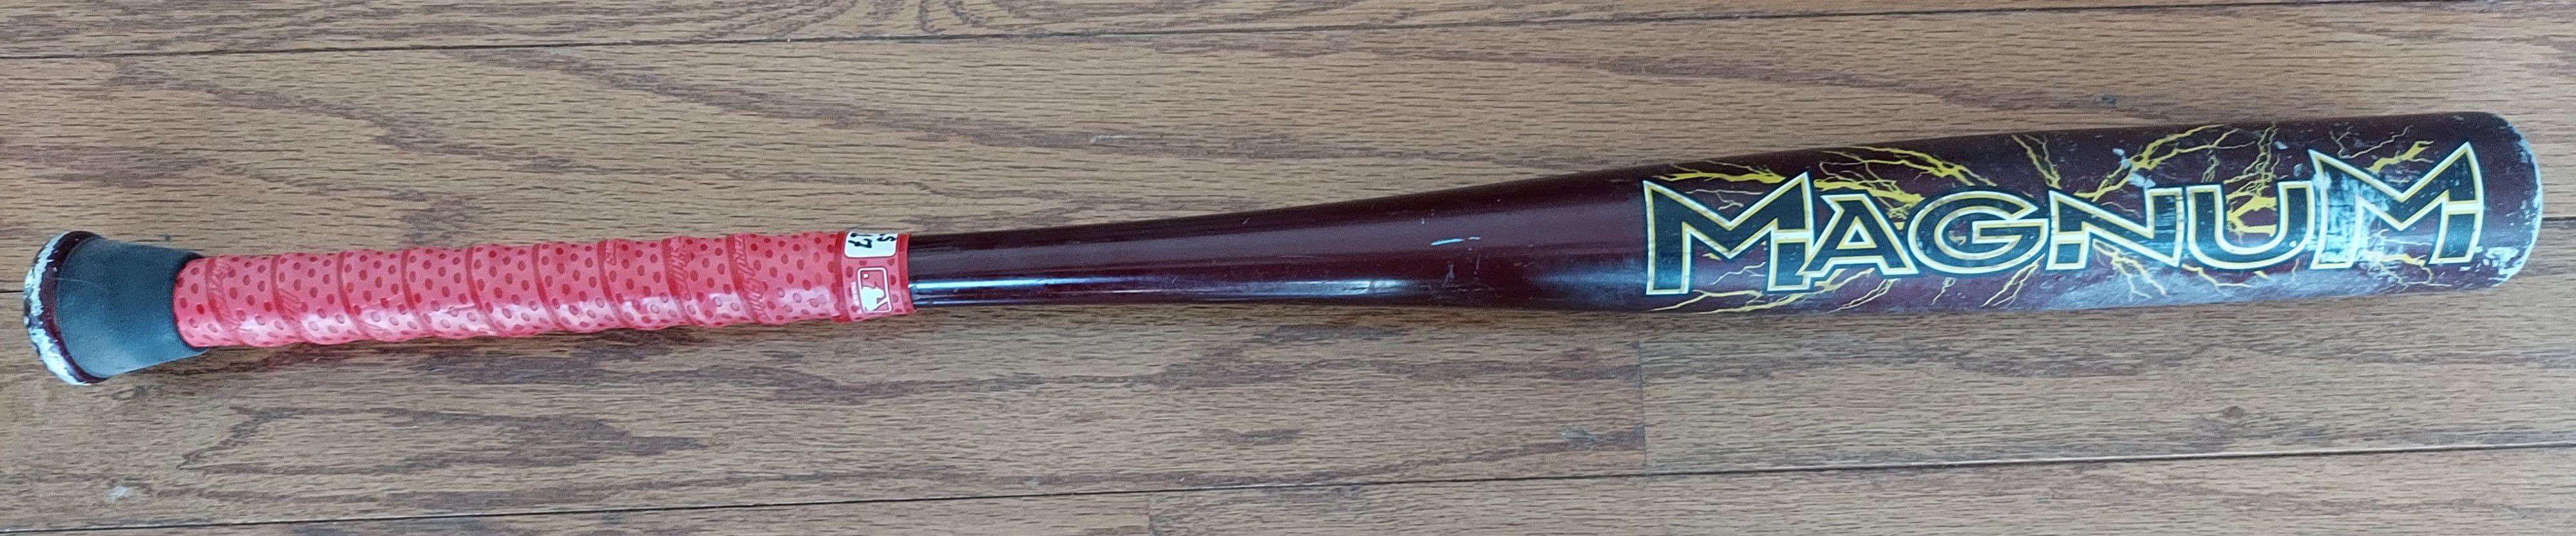 Easton Magnum LK40 baseball bat